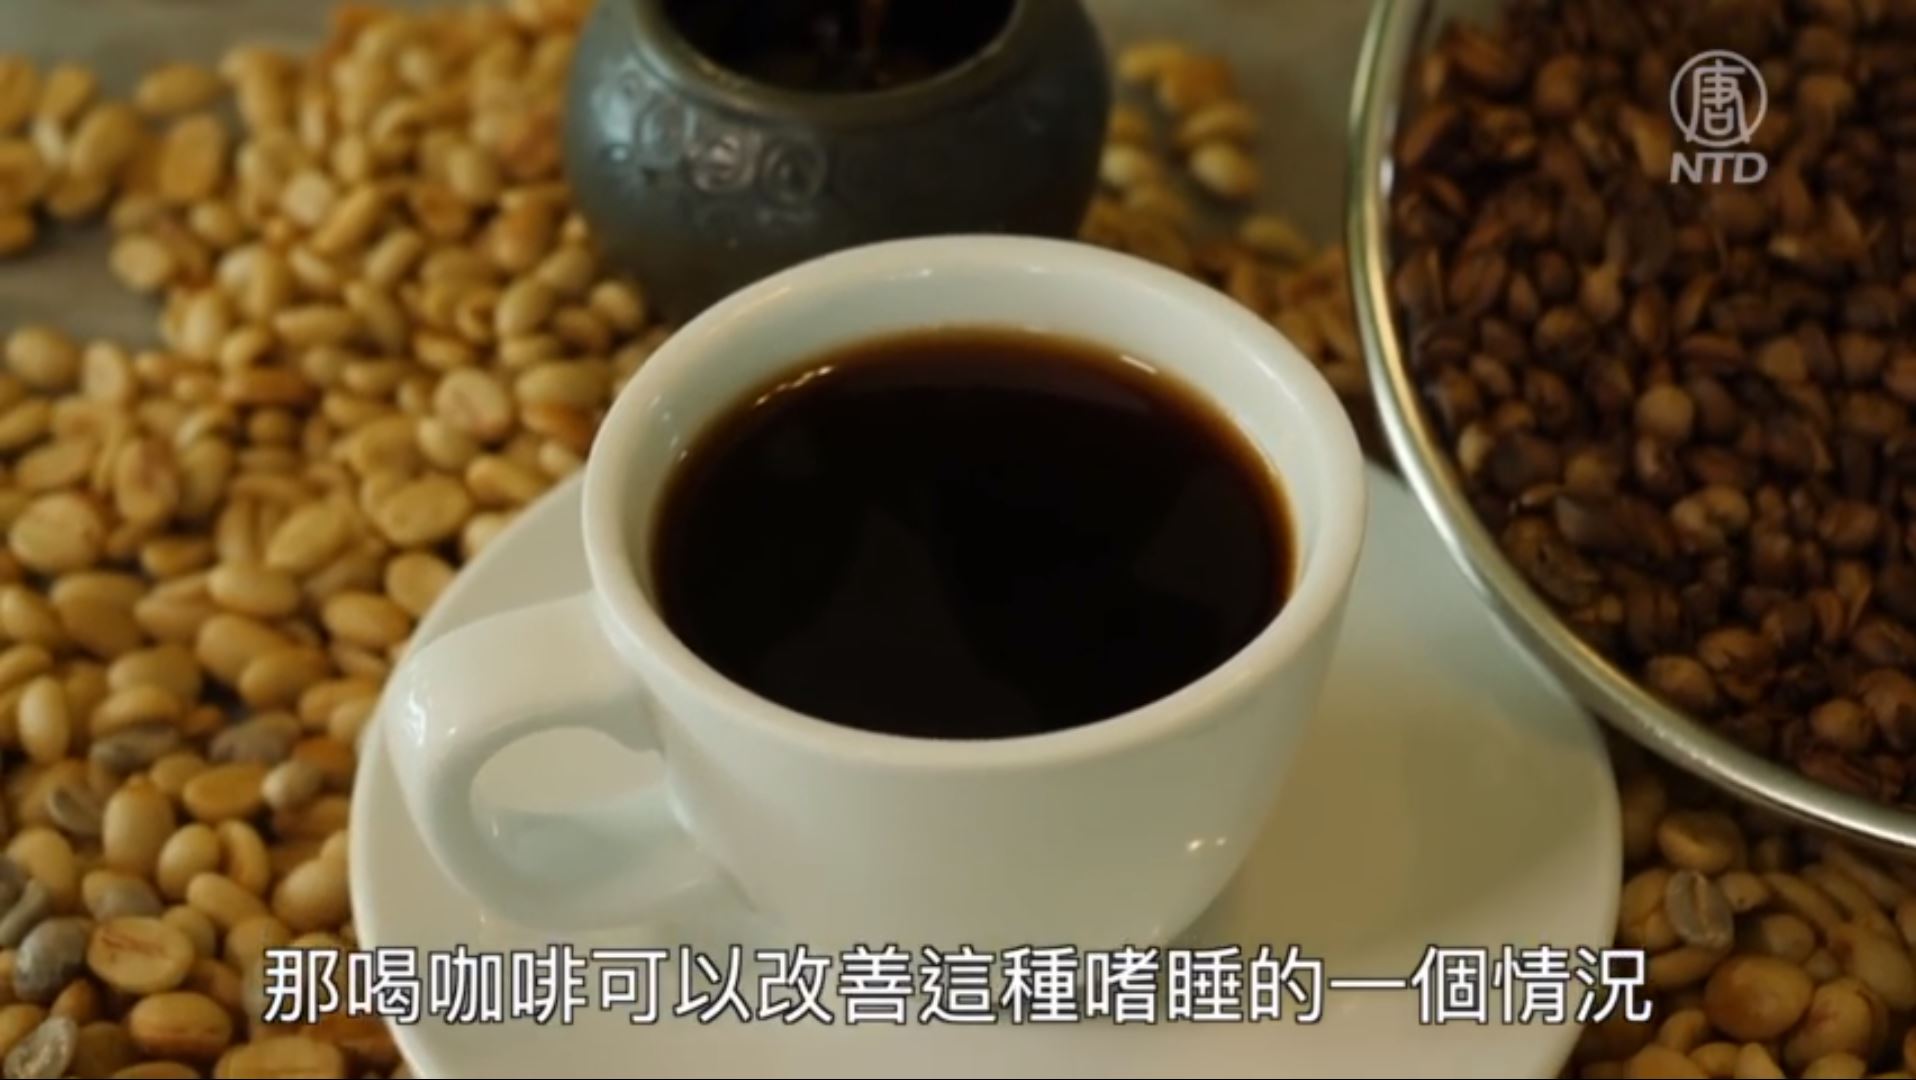 哪种咖啡好喝不苦口感香醇又提神？蘑菇咖啡风味有什么特点？蘑菇和咖啡可以一起吃吗？ 中国咖啡网